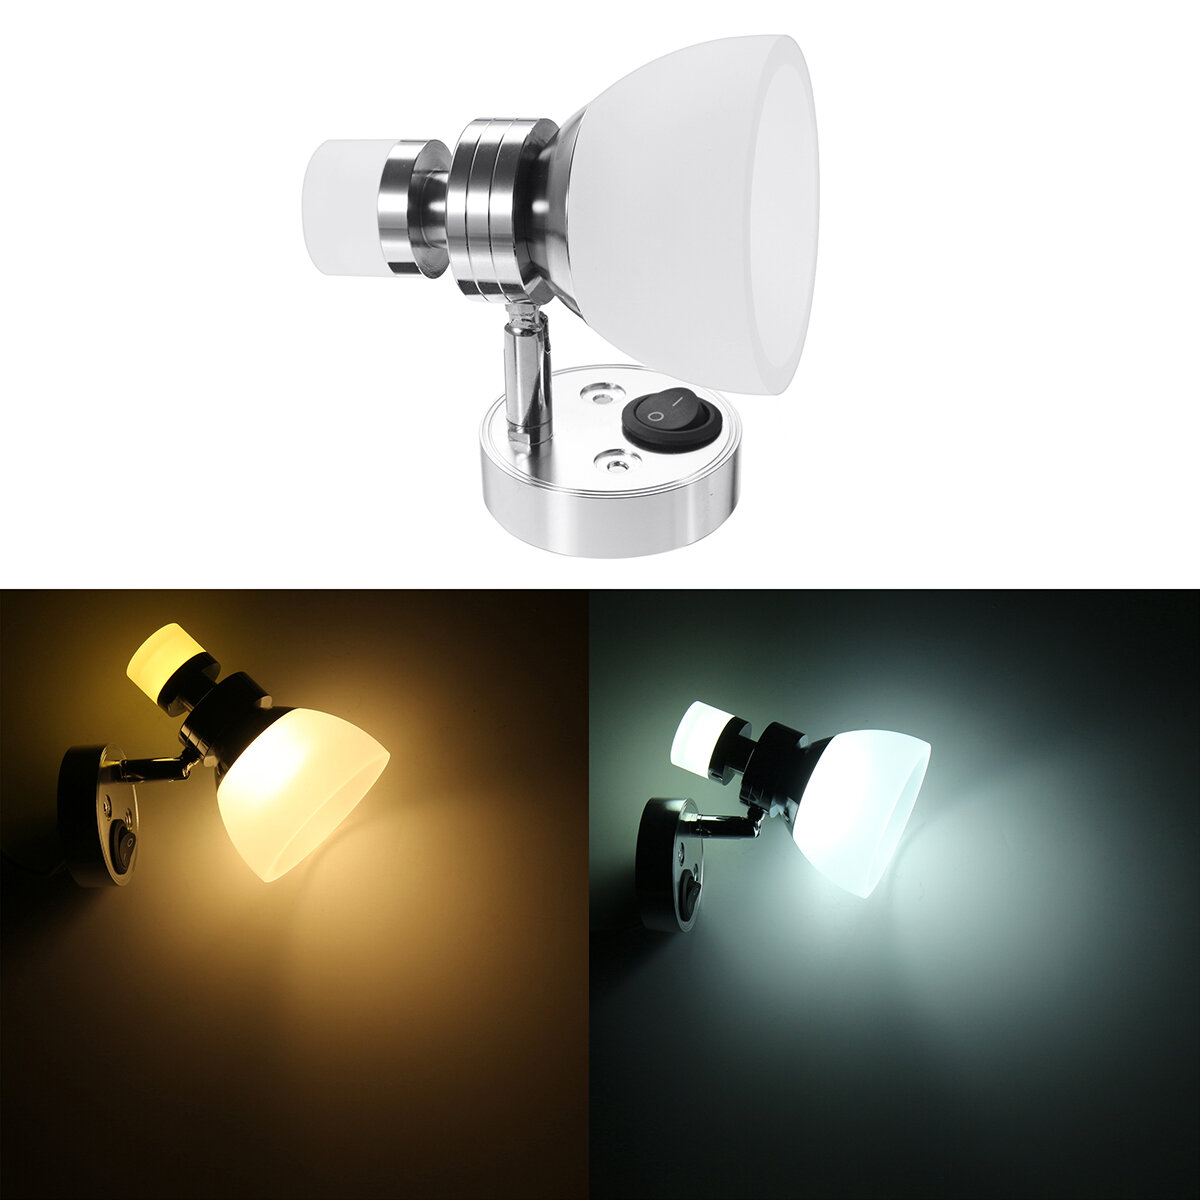 

Светодиодный светильник для чтения Spot Wall Mount прикроватный Лампа для Лодка RV Camper Trailer Van Авто